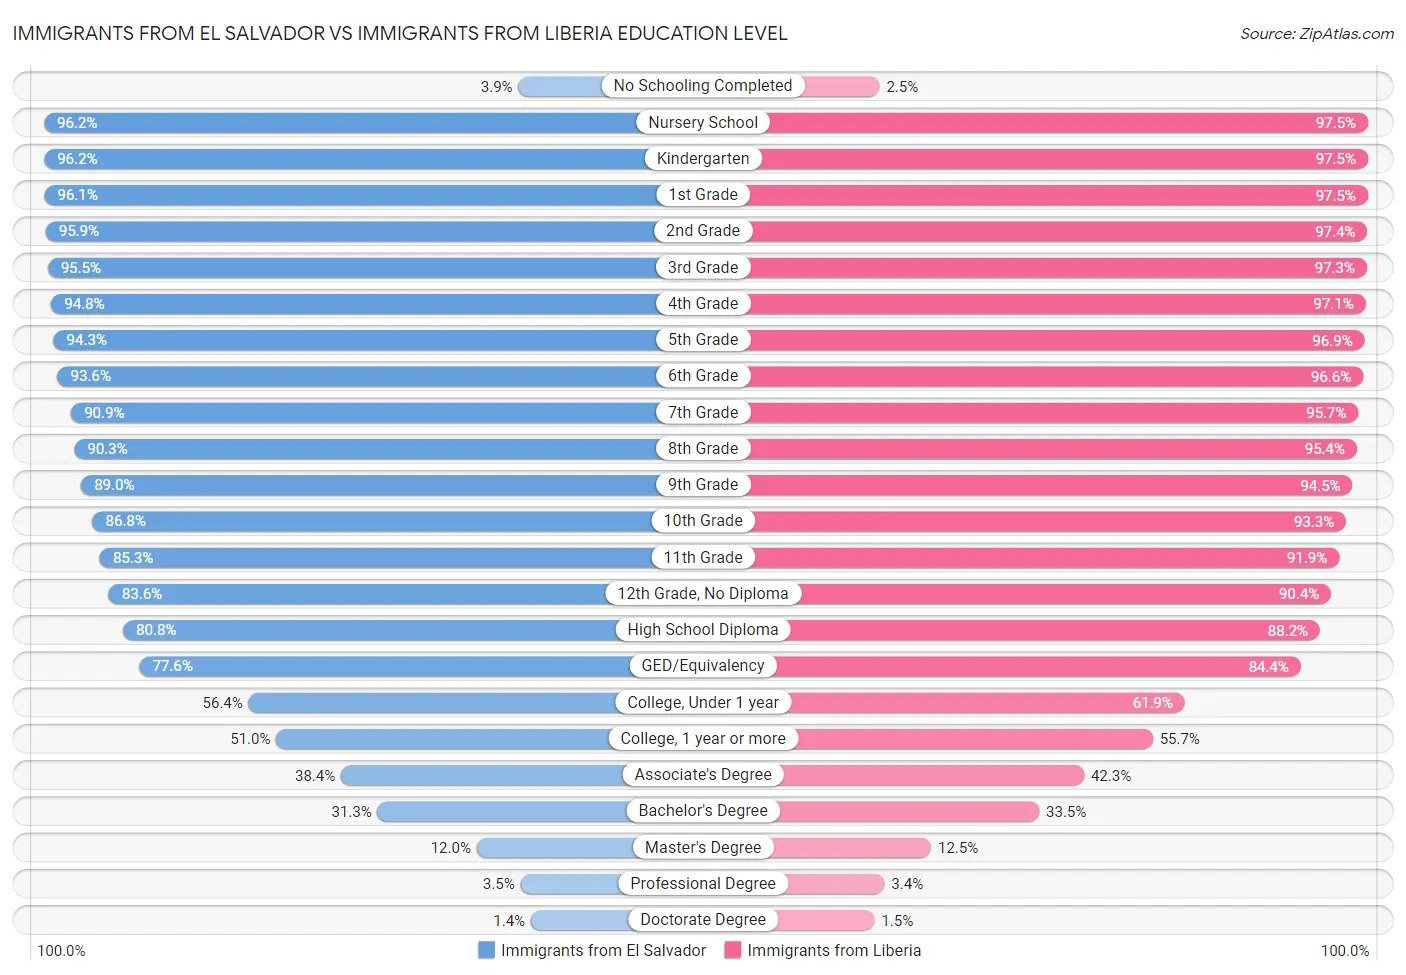 Immigrants from El Salvador vs Immigrants from Liberia Education Level